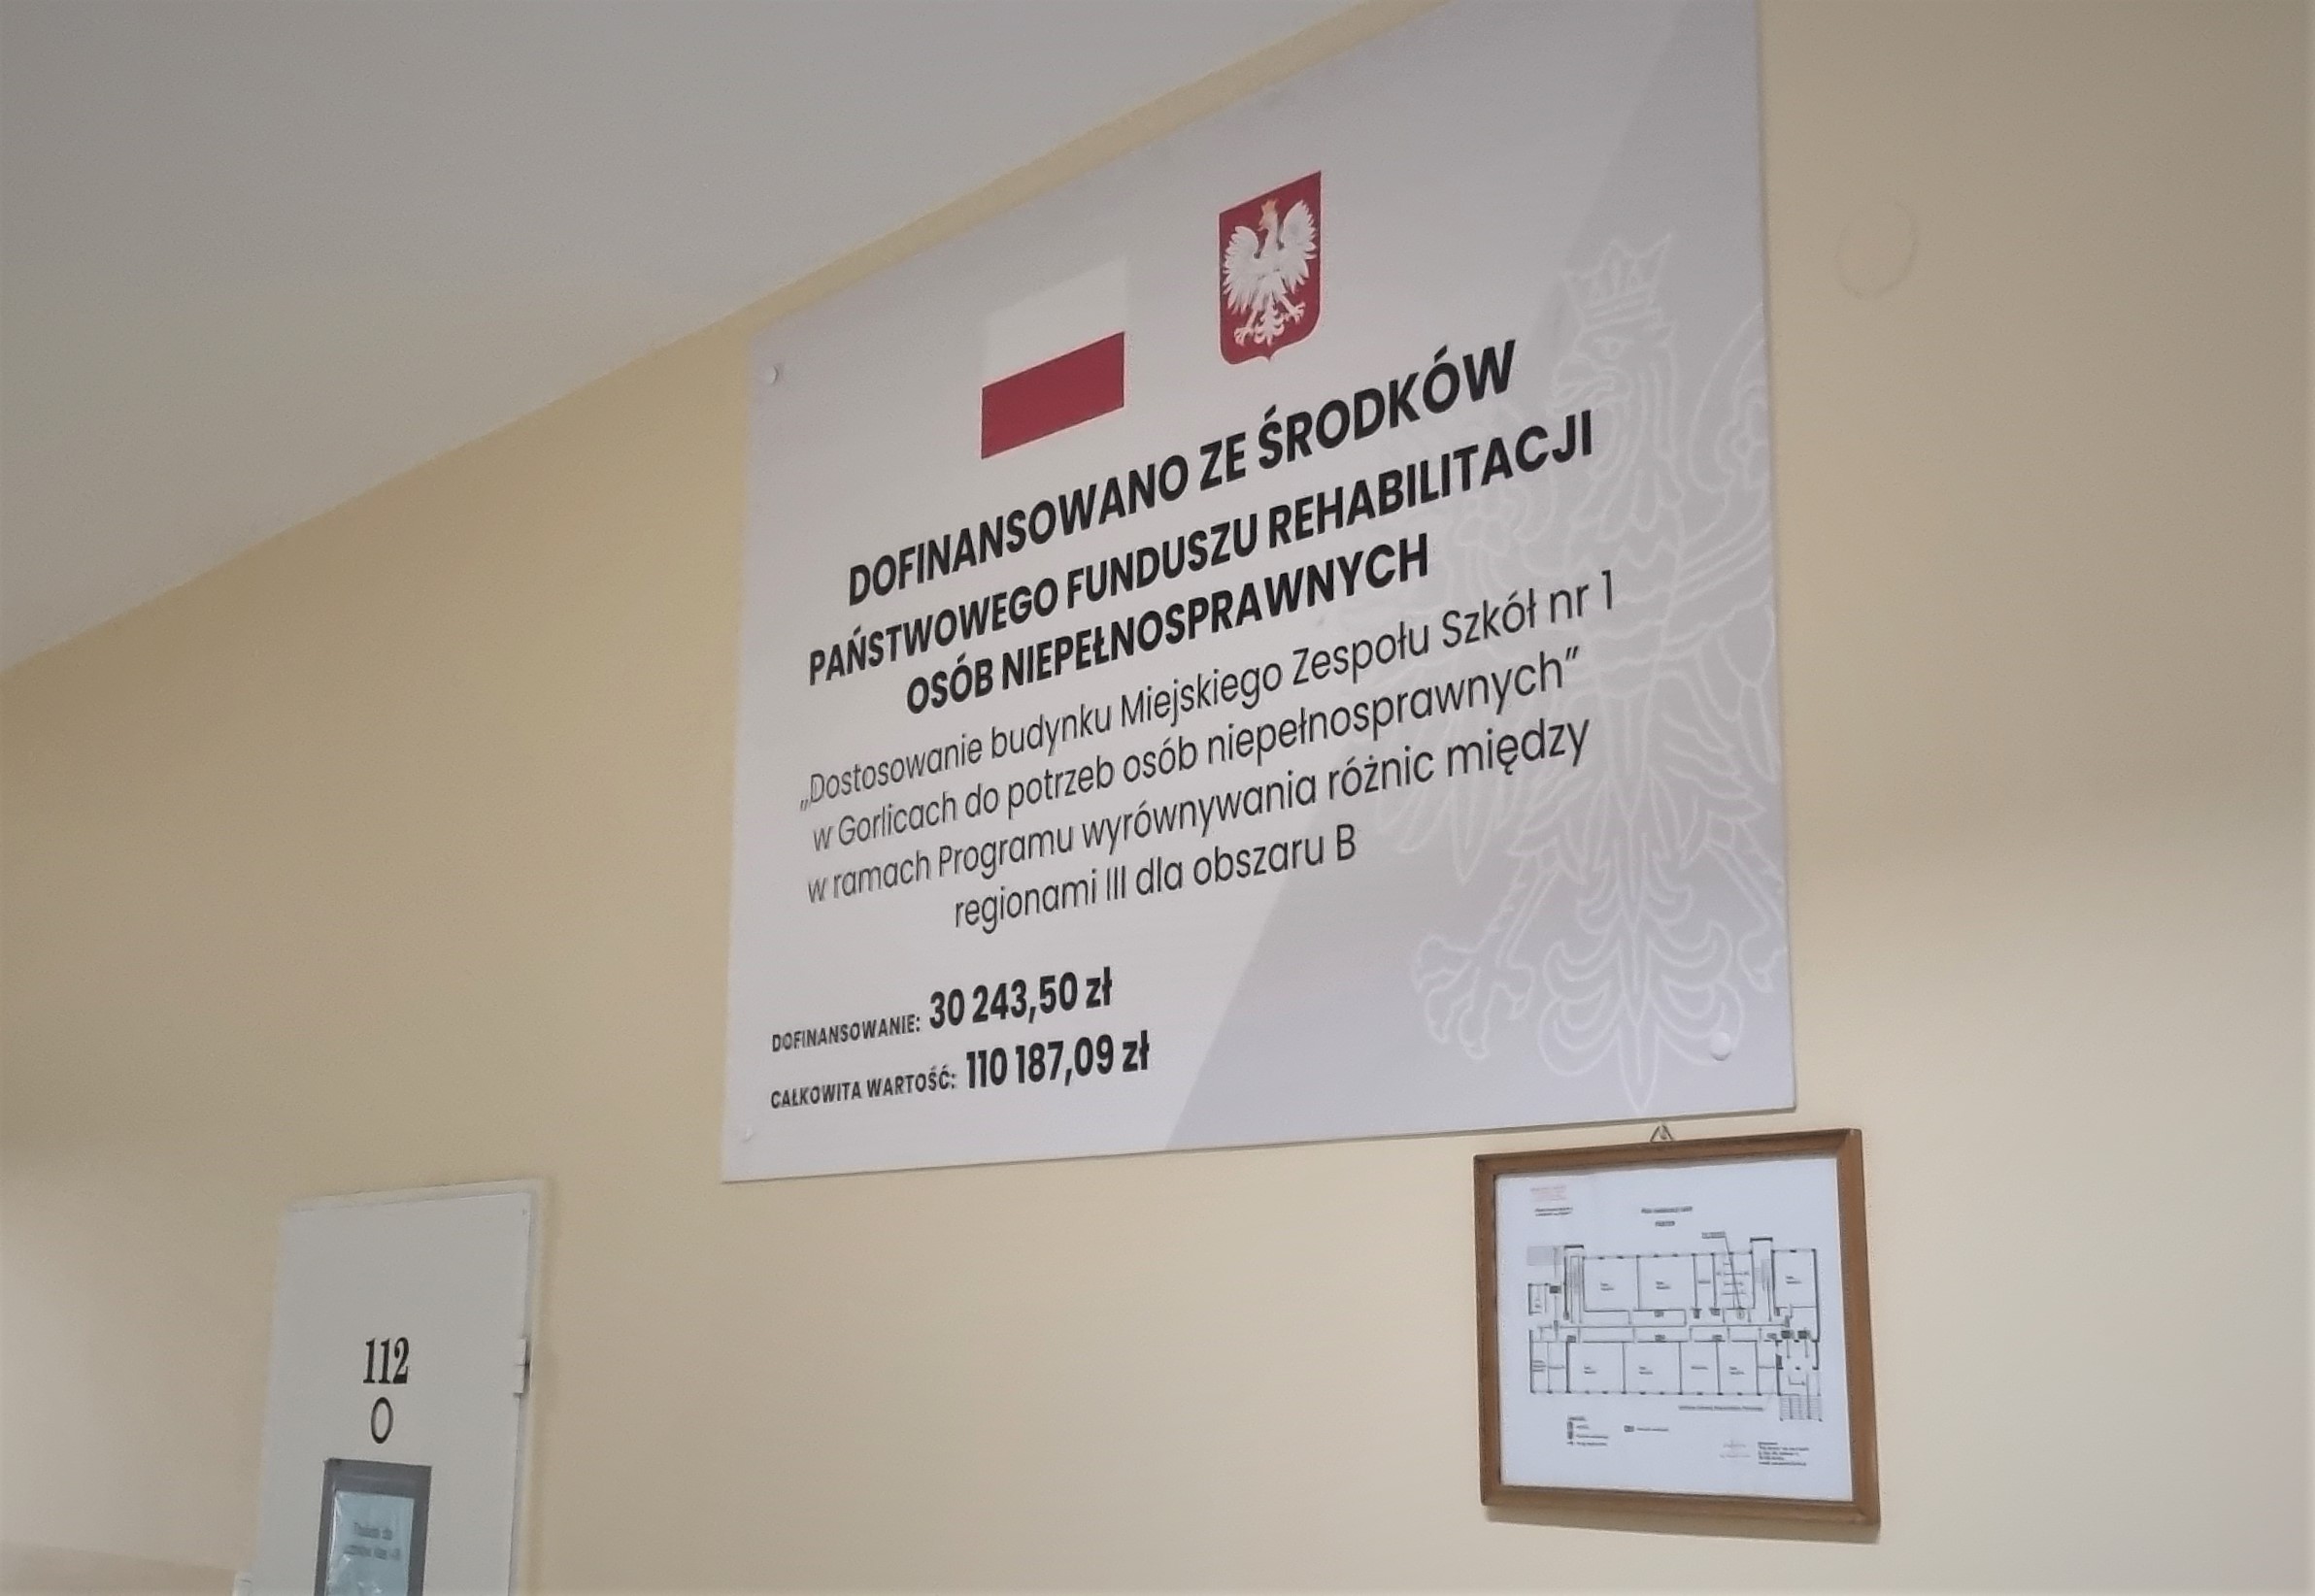 tablica informująca o dofinansowaniu zadania, zamieszczona w korytarzu na parterze Miejskiego Zespołu Szkół nr 1